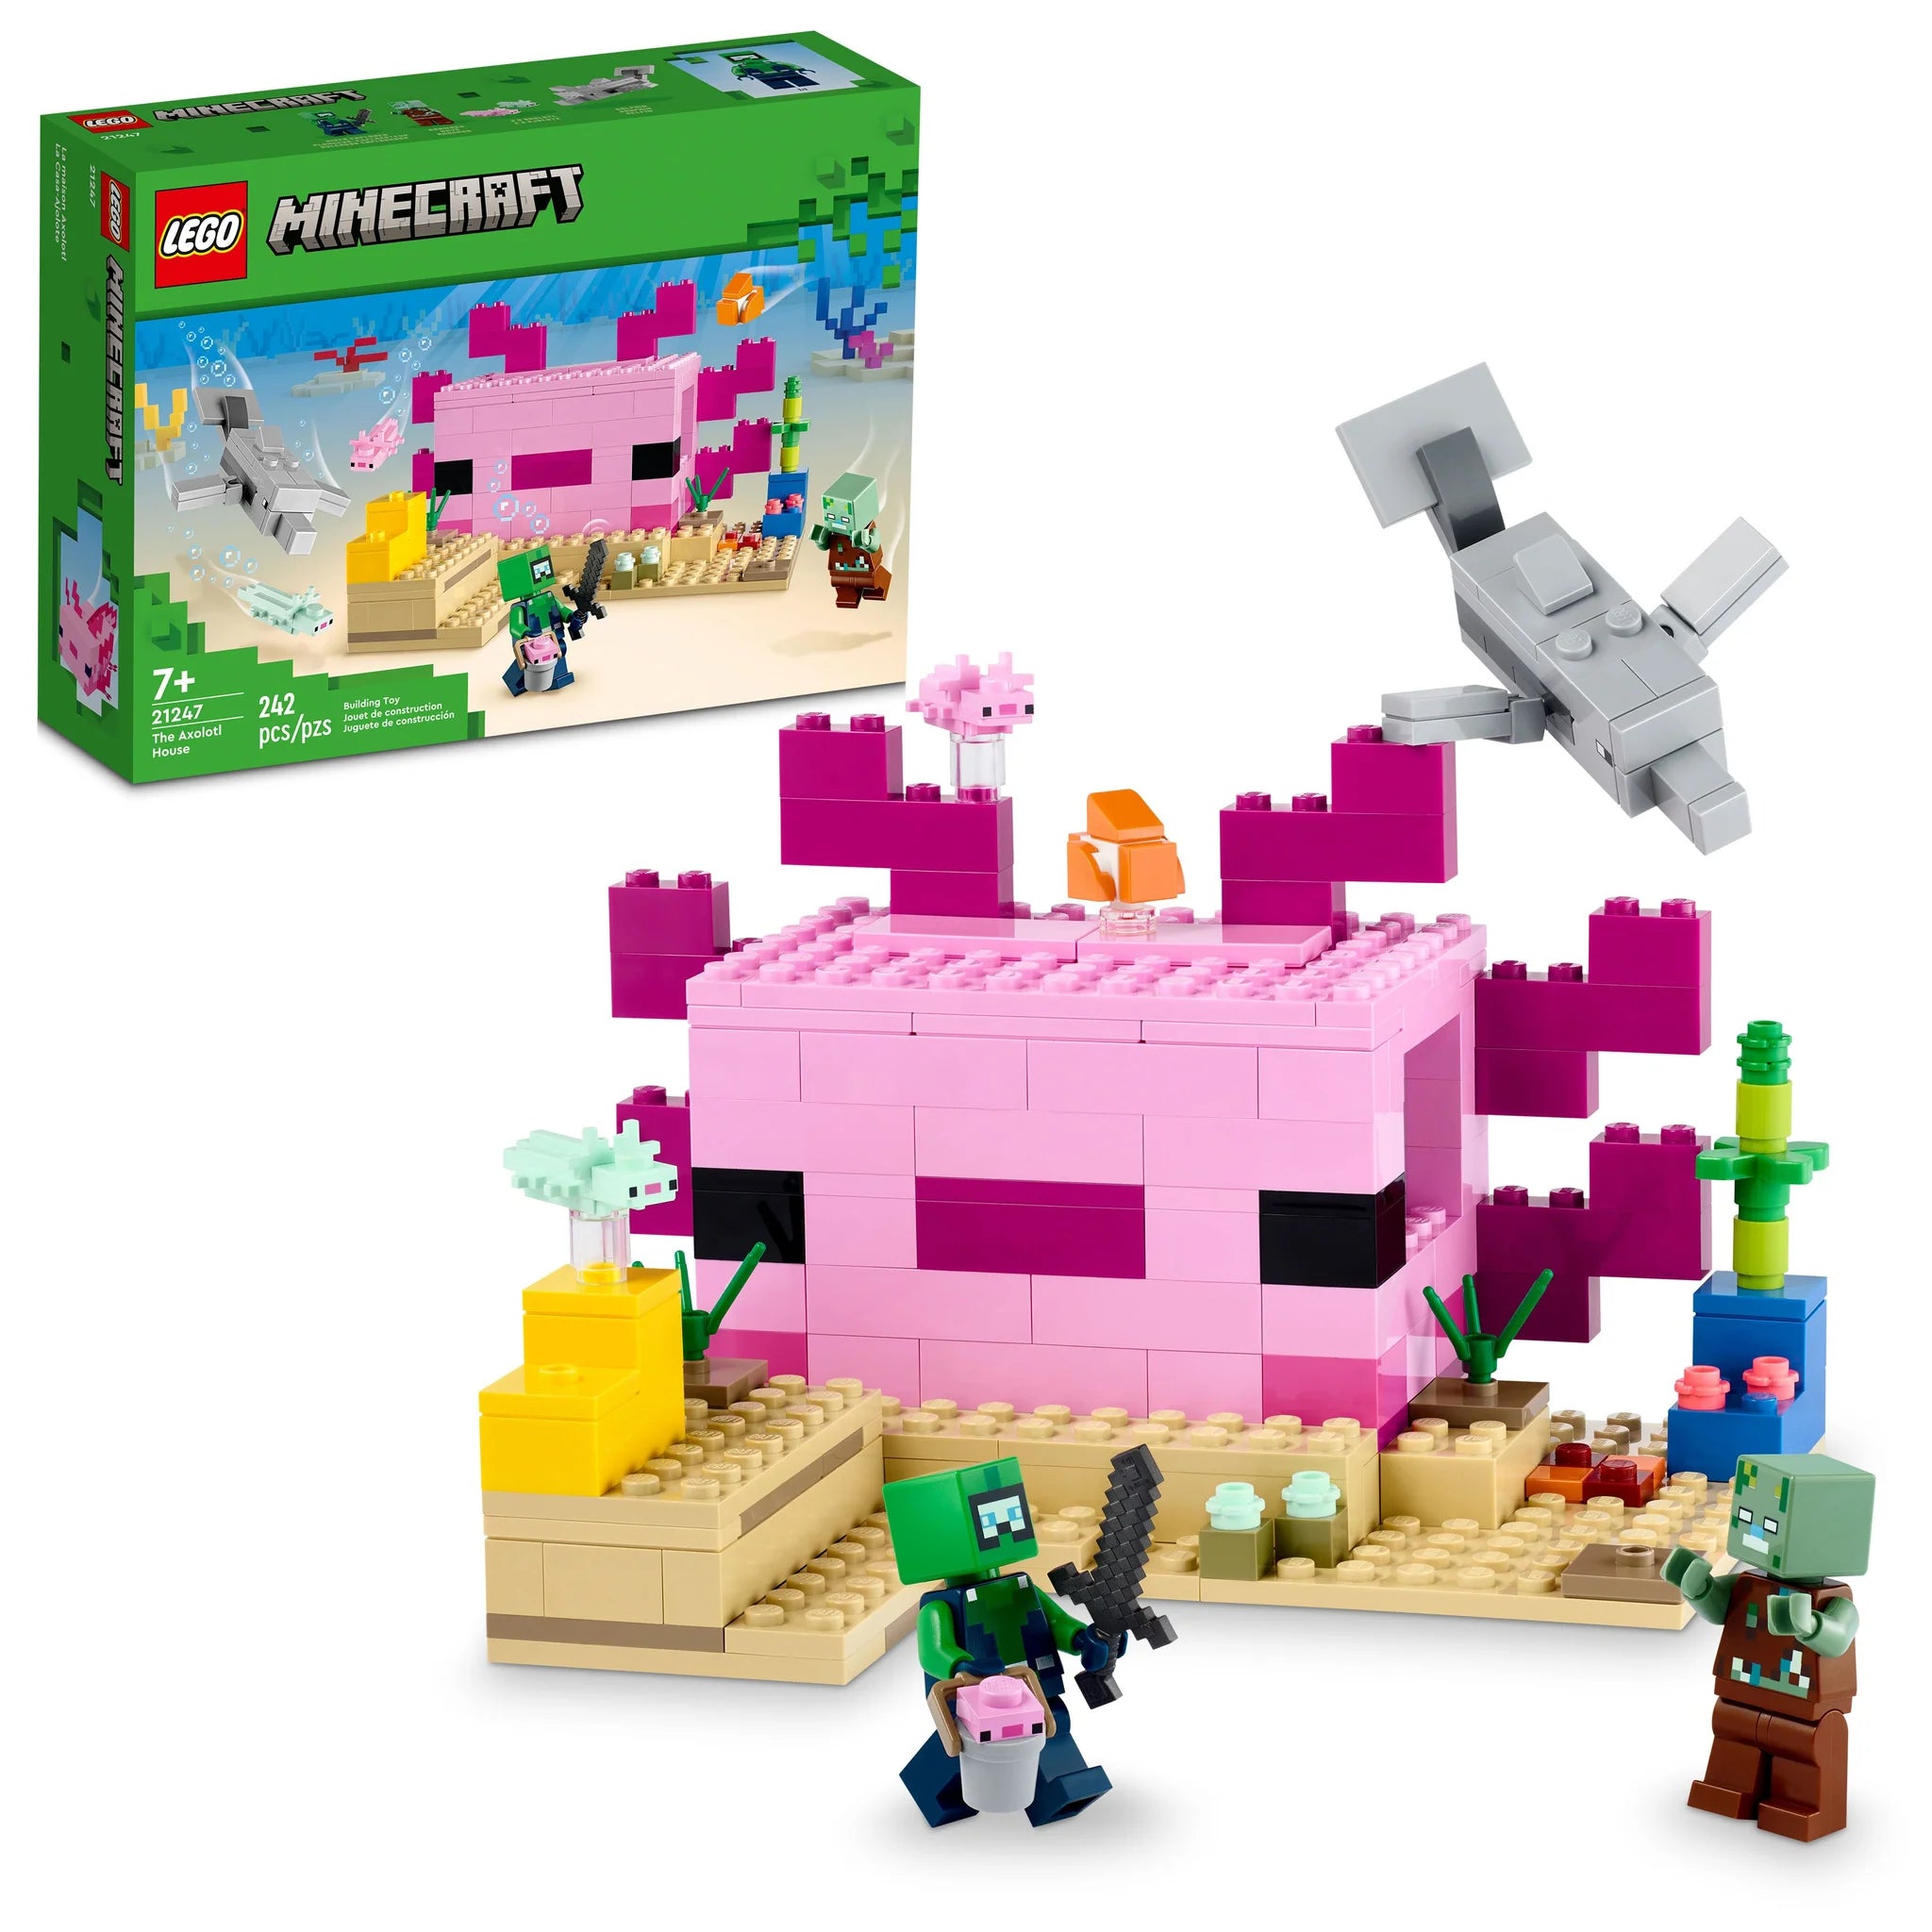 LEGO: The Axolotl House